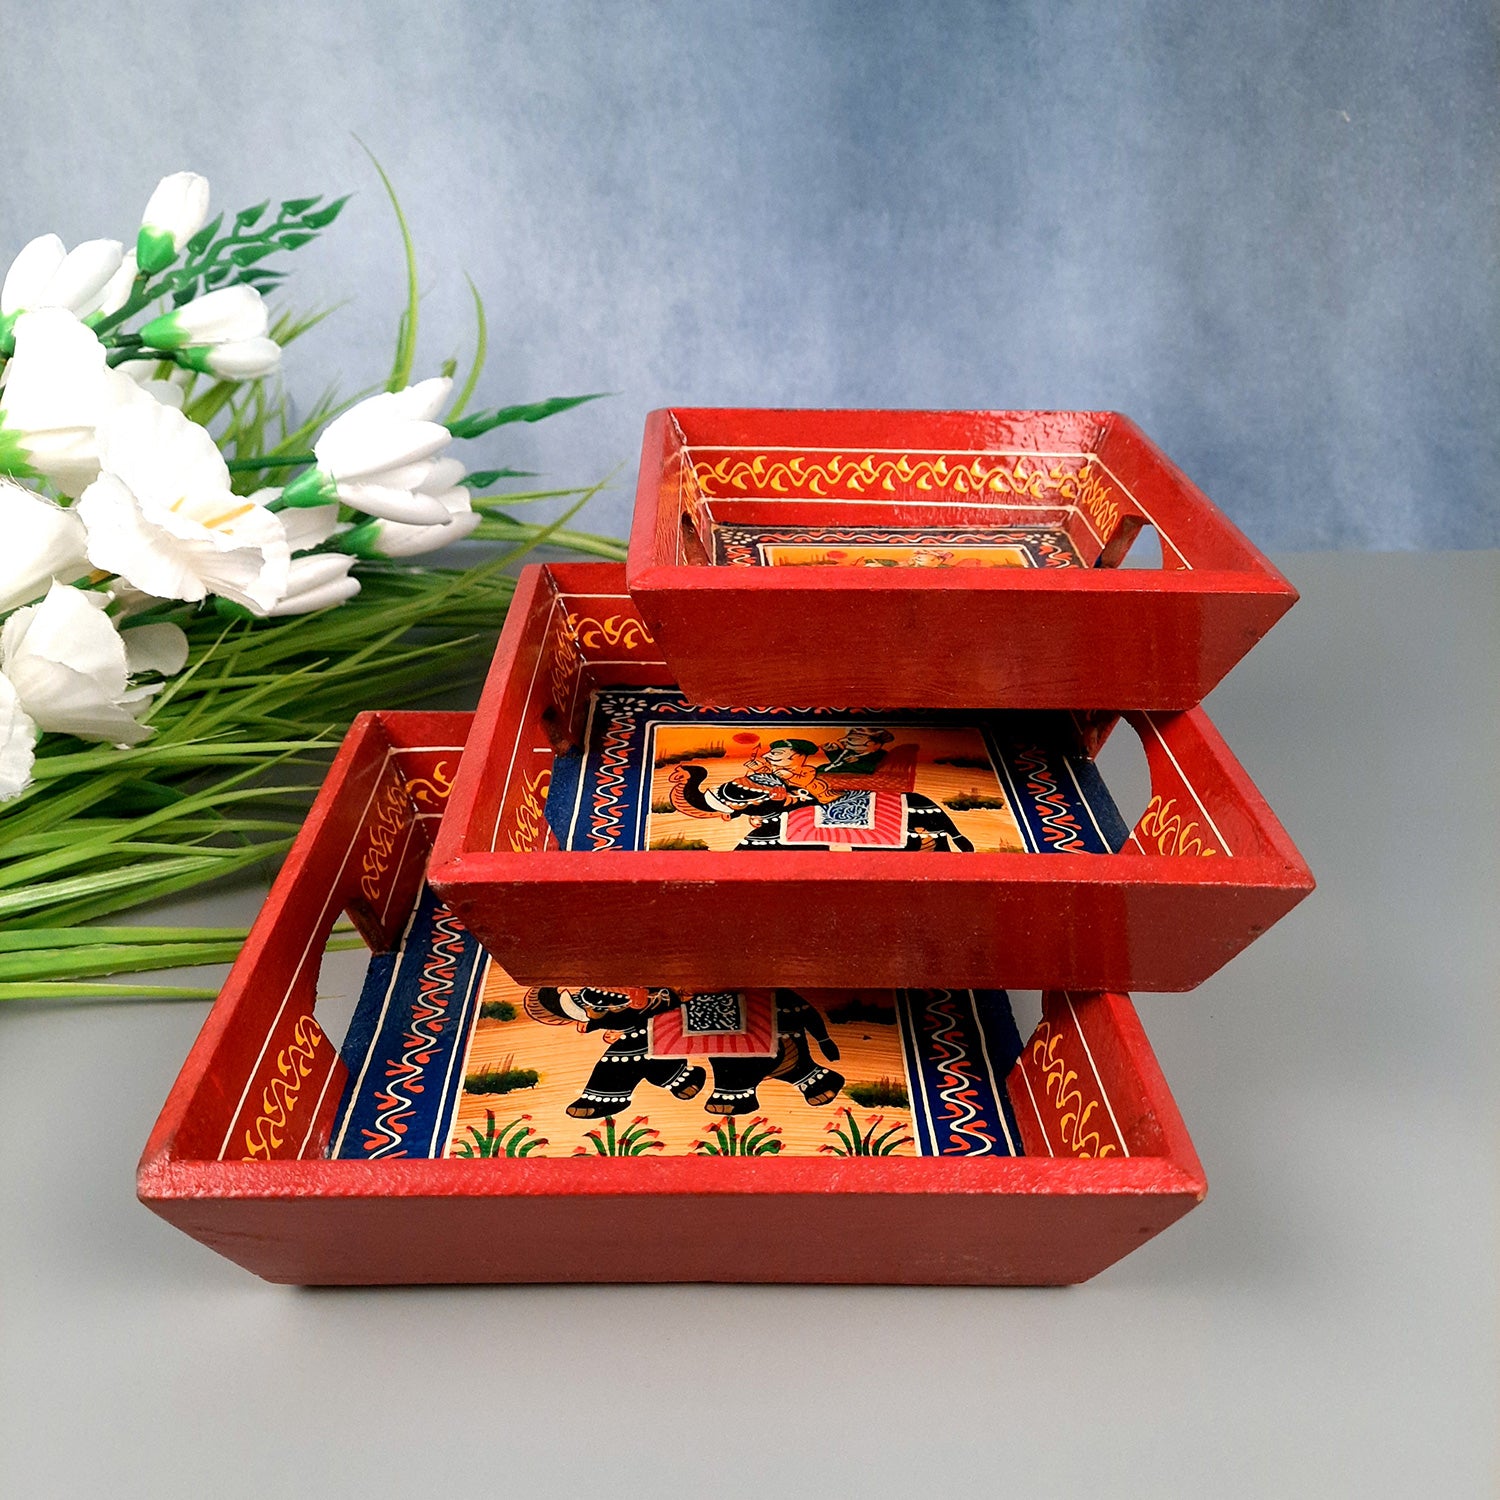 Wooden Serving Tray Set | Tea & Snacks Serving Platter - for Home, Dining Table, Kitchen Decor - (Wood, Red) (Set of 3)- Apkamart